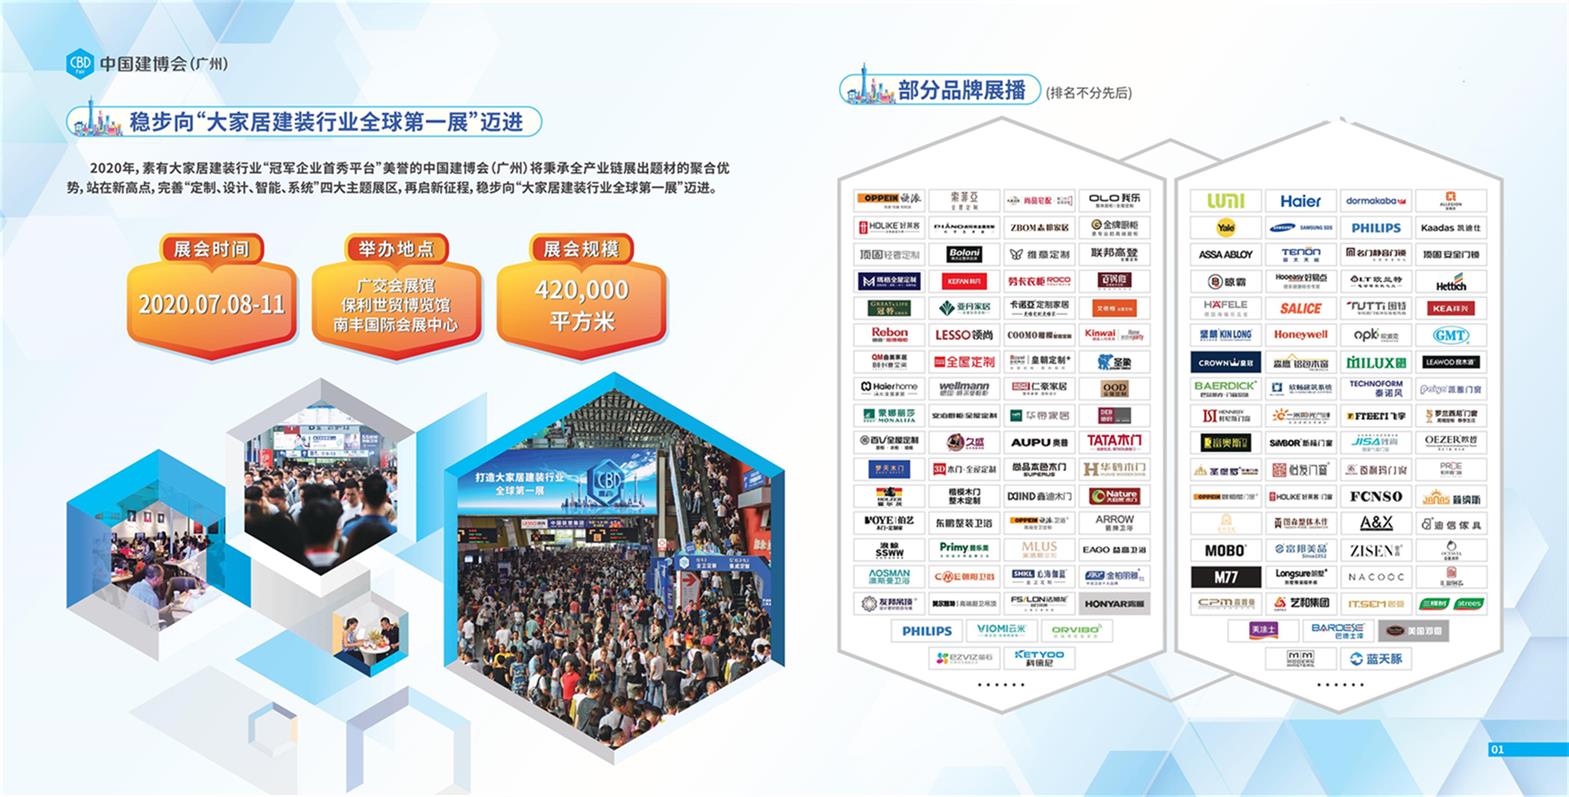 上海集成吊顶展览会展位电话 2020年7月